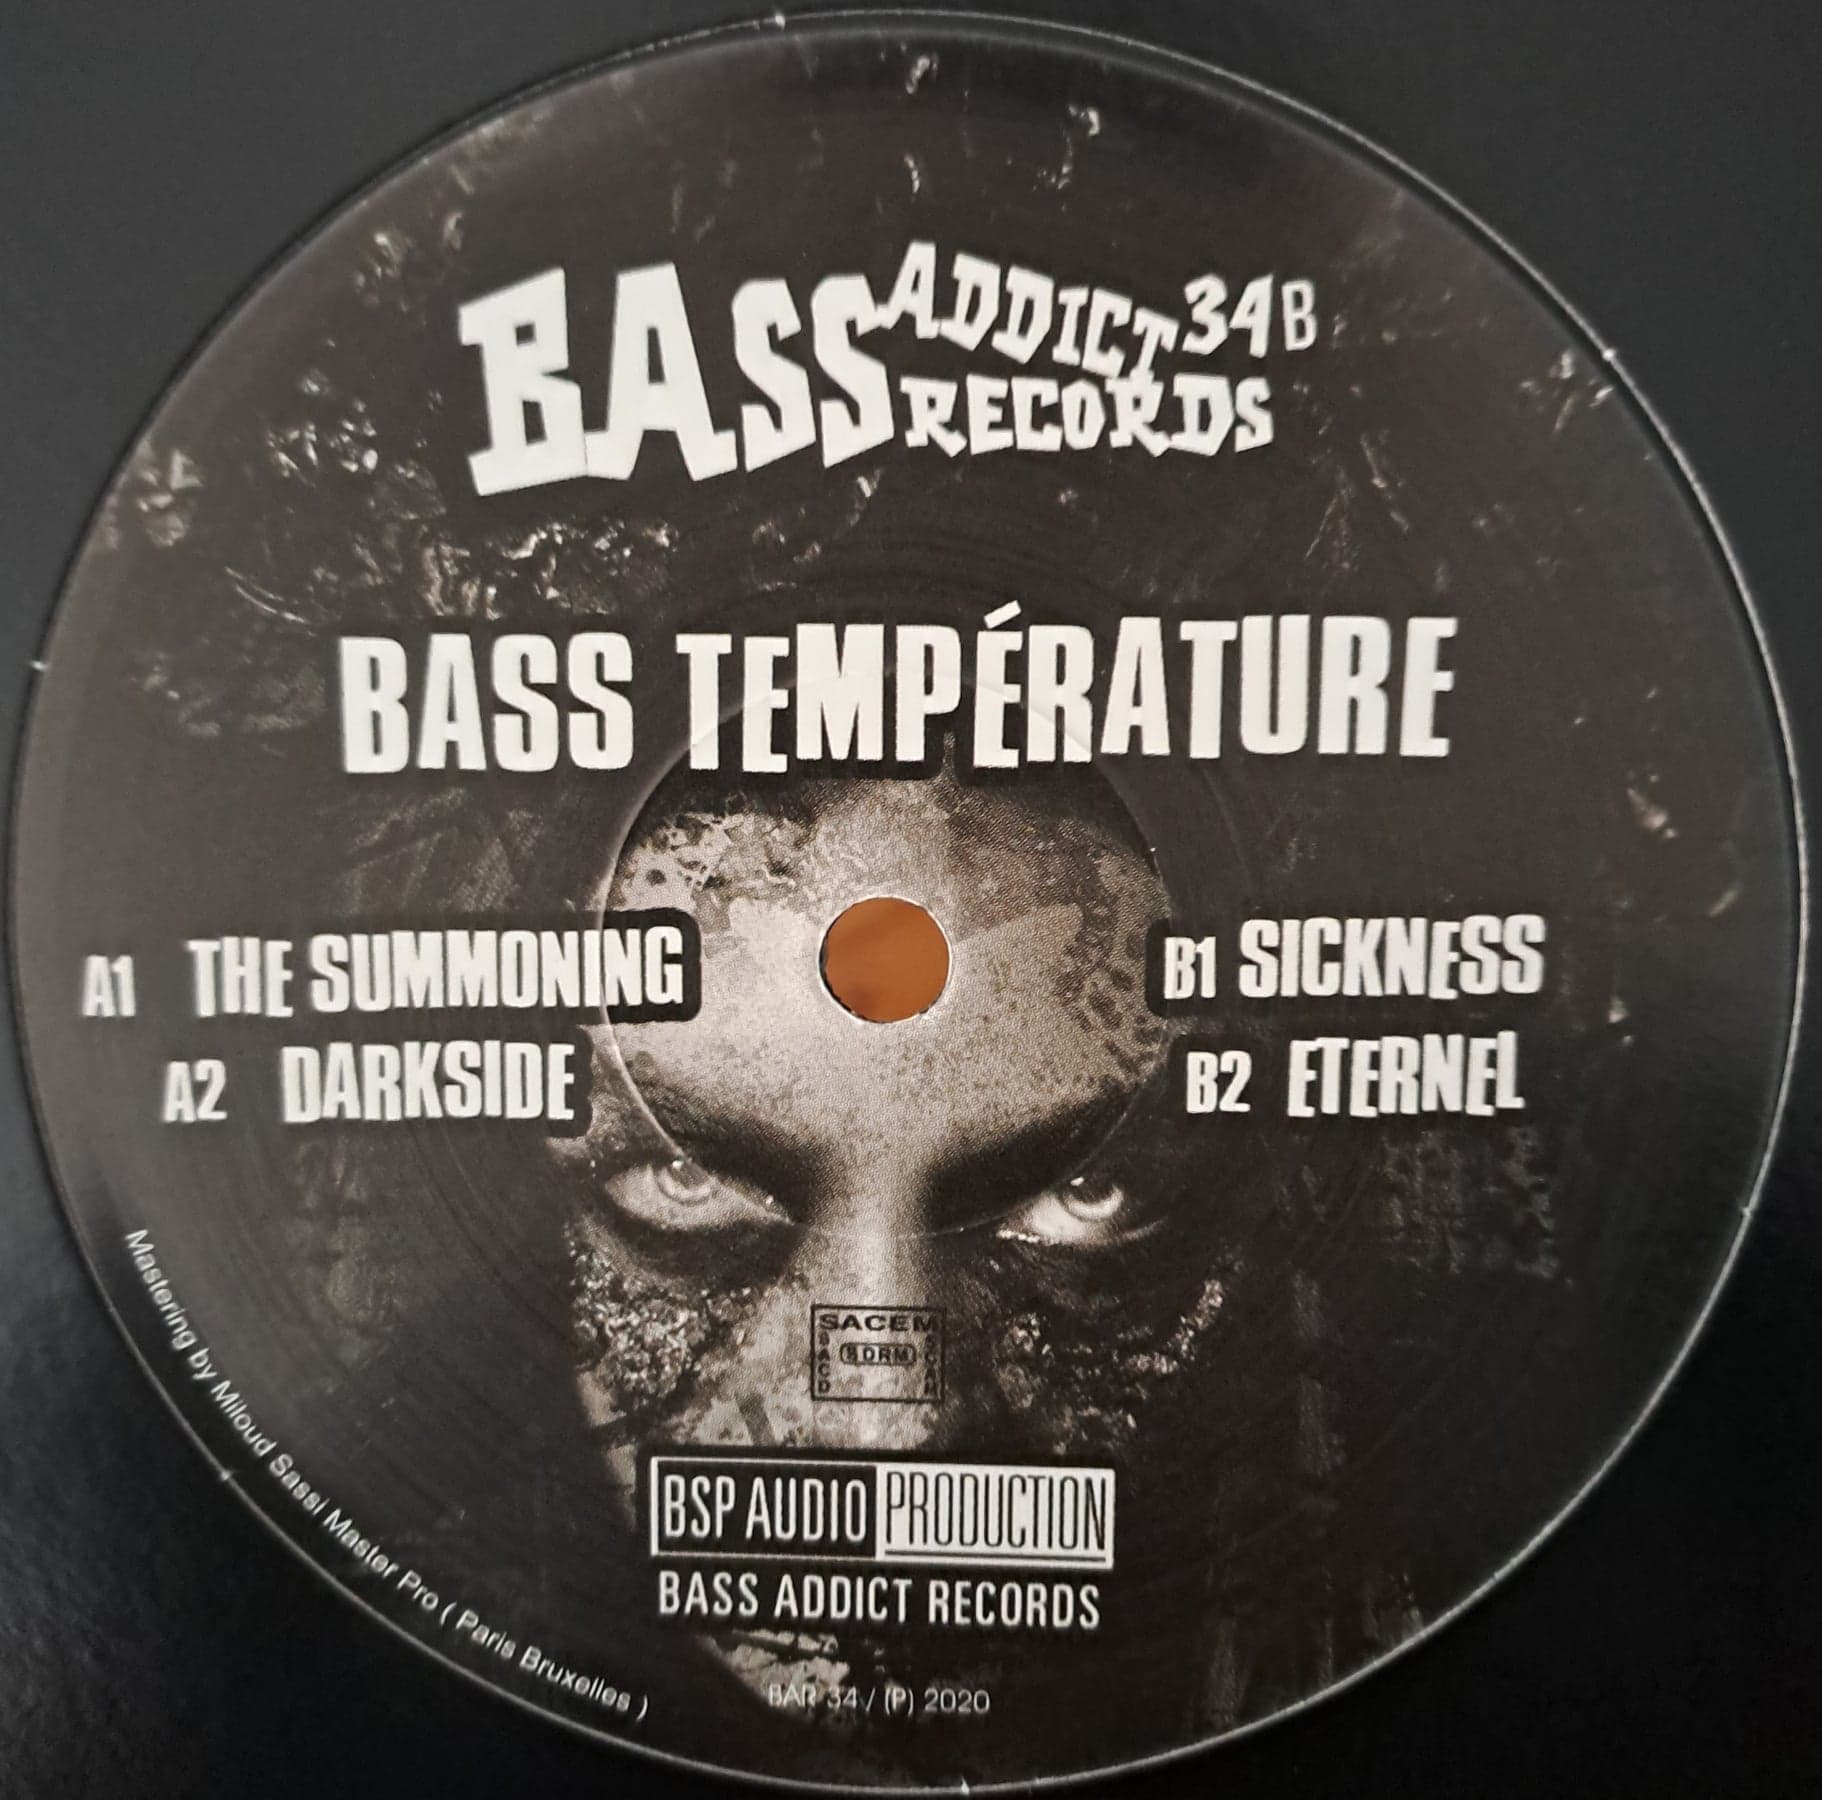 Bass Addict 34 (toute dernière copie en stock) - vinyle acid